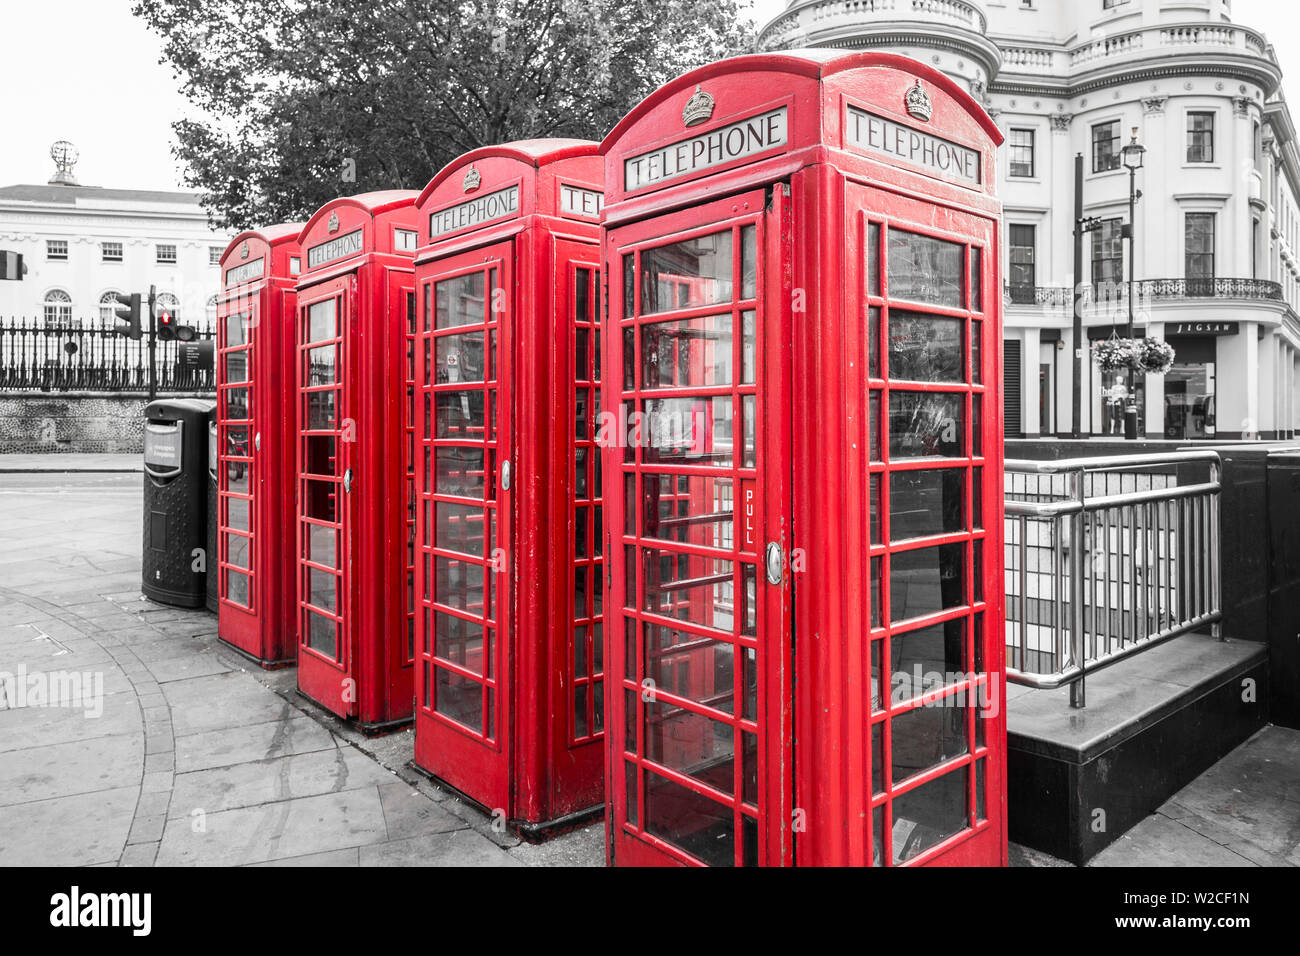 4 cabine telefoniche rosse, London, England, Regno Unito Foto Stock